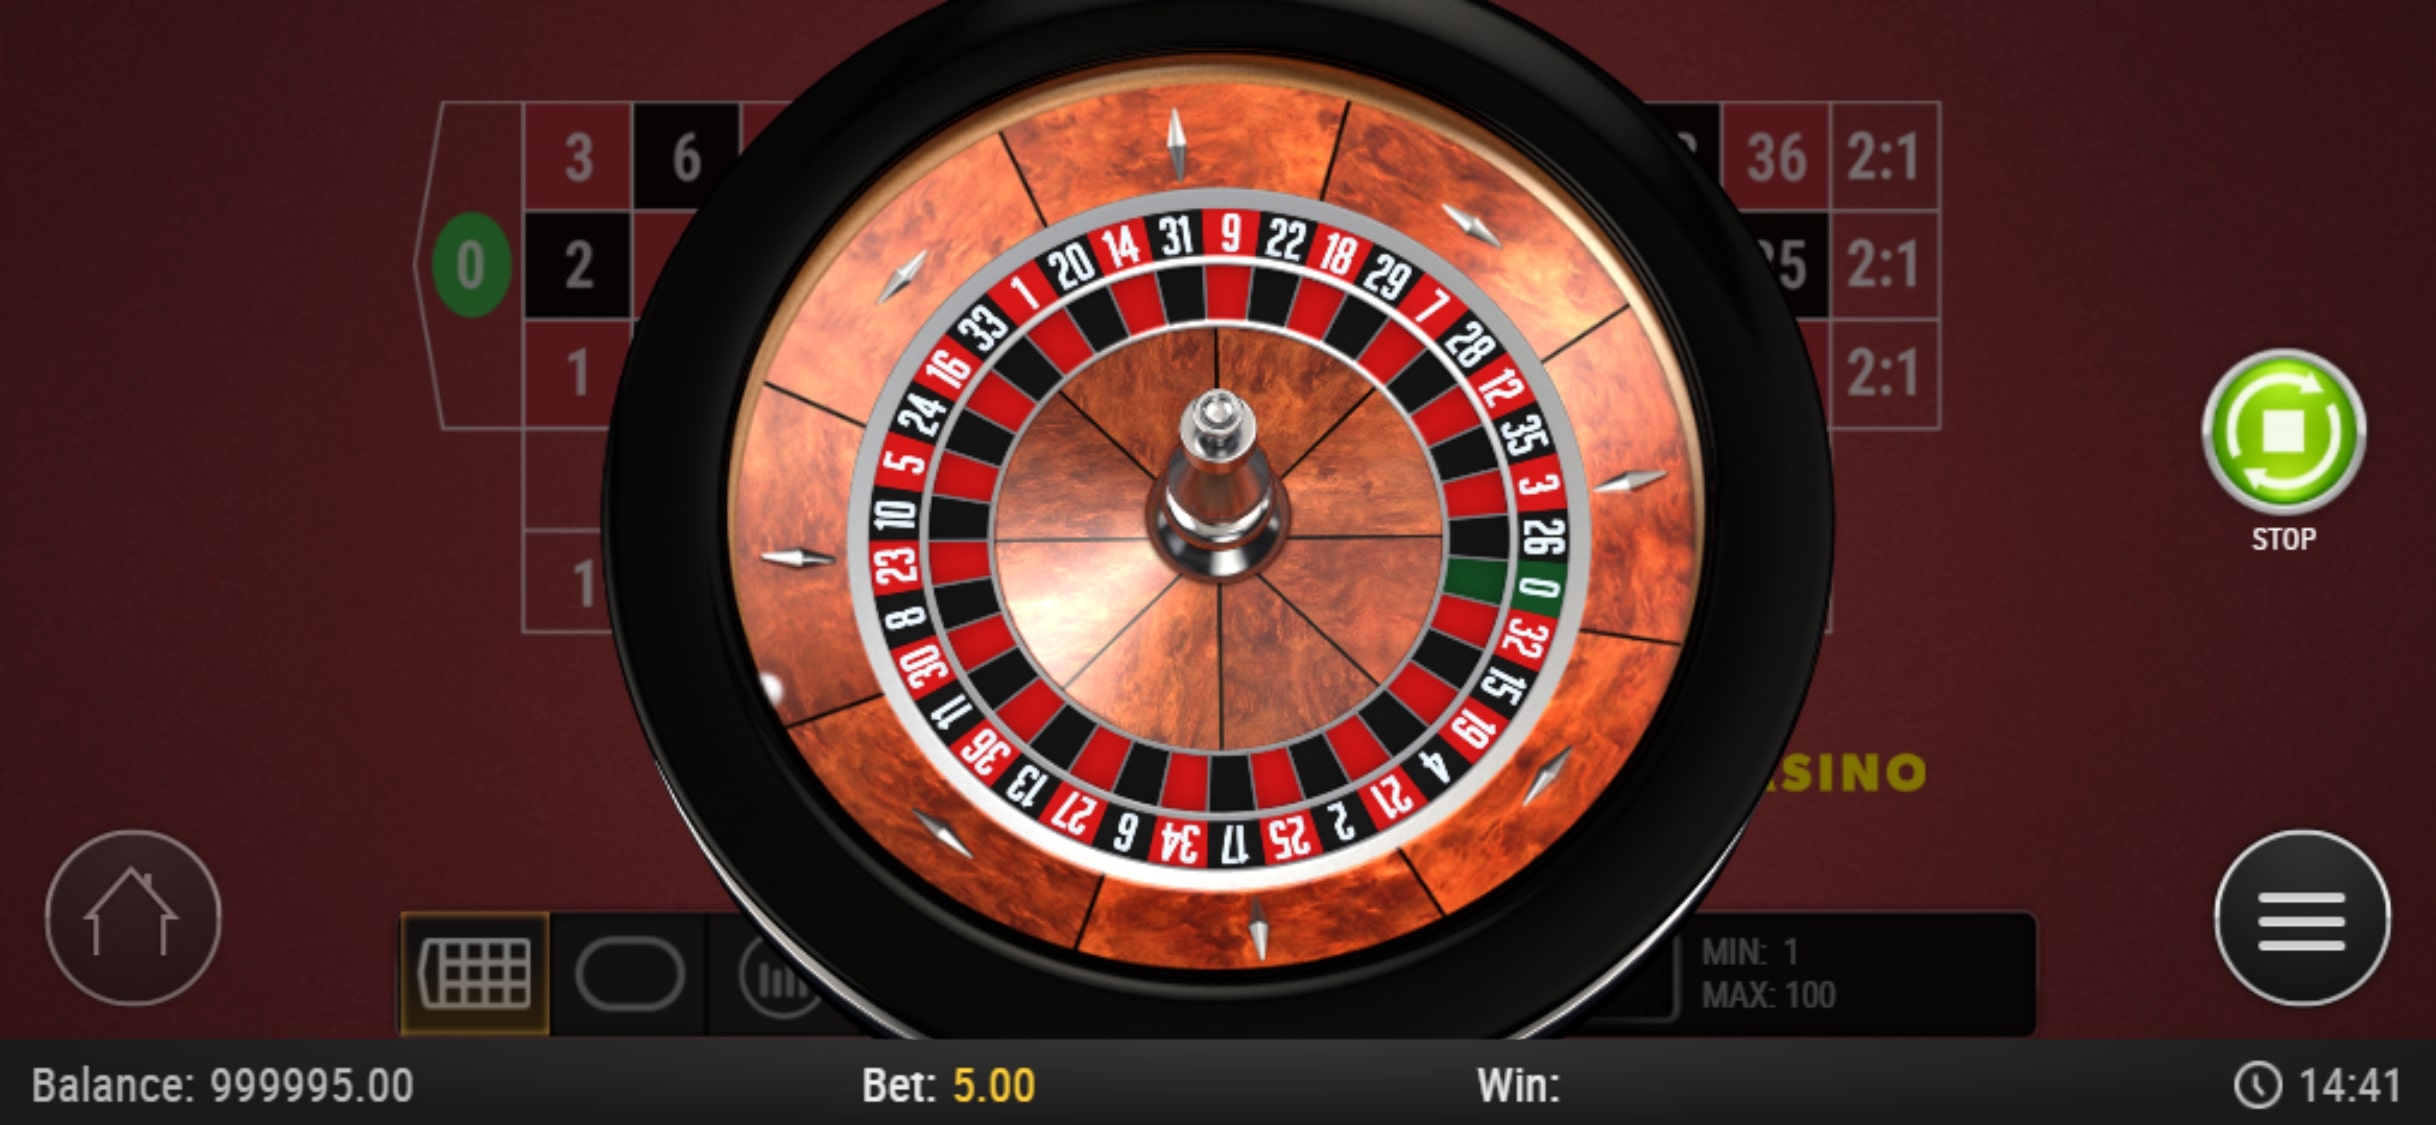 Rizk Casino Mobile Casino Games Review